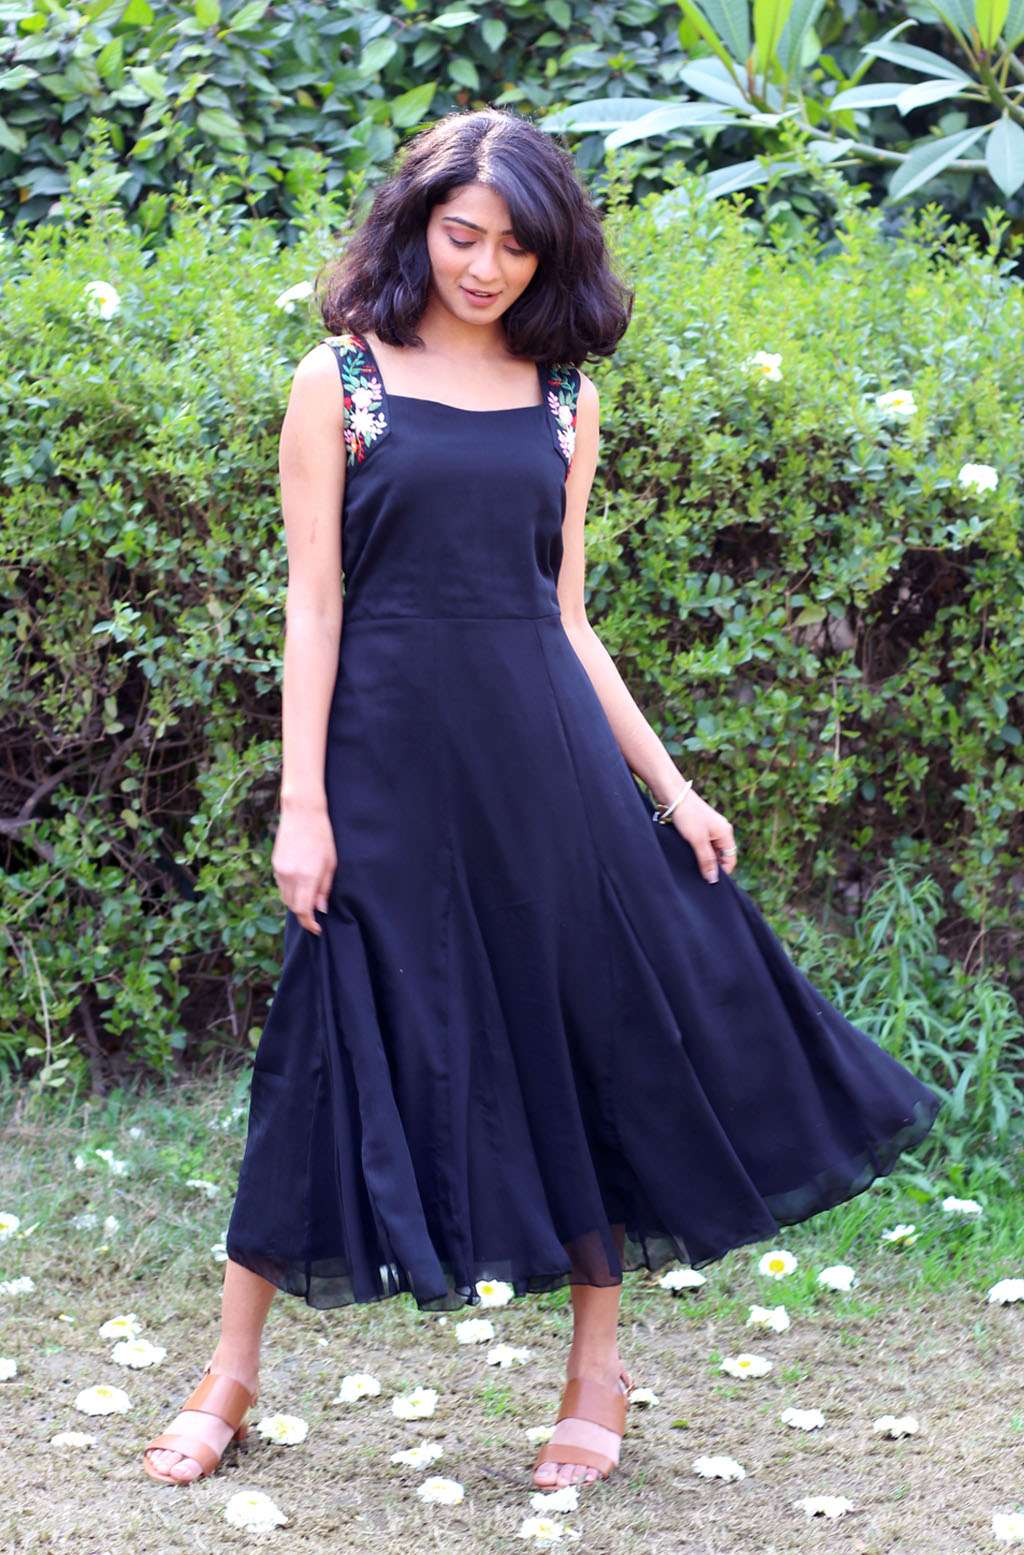 Raven Chiffon Black Dress